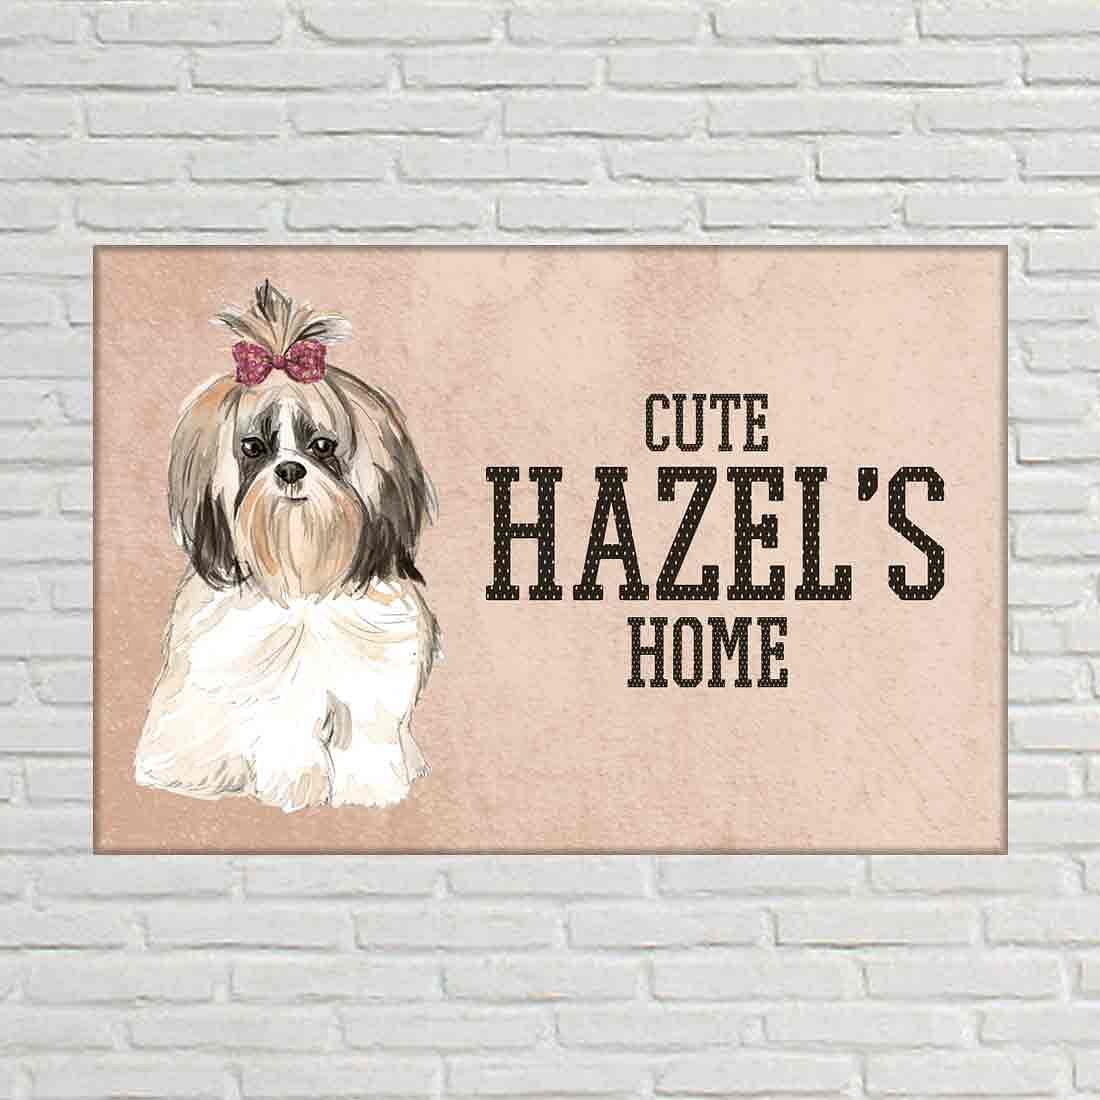 Creative Dog Door Name Plate -Cute shih tzu Sweet Shihtzu Nutcase